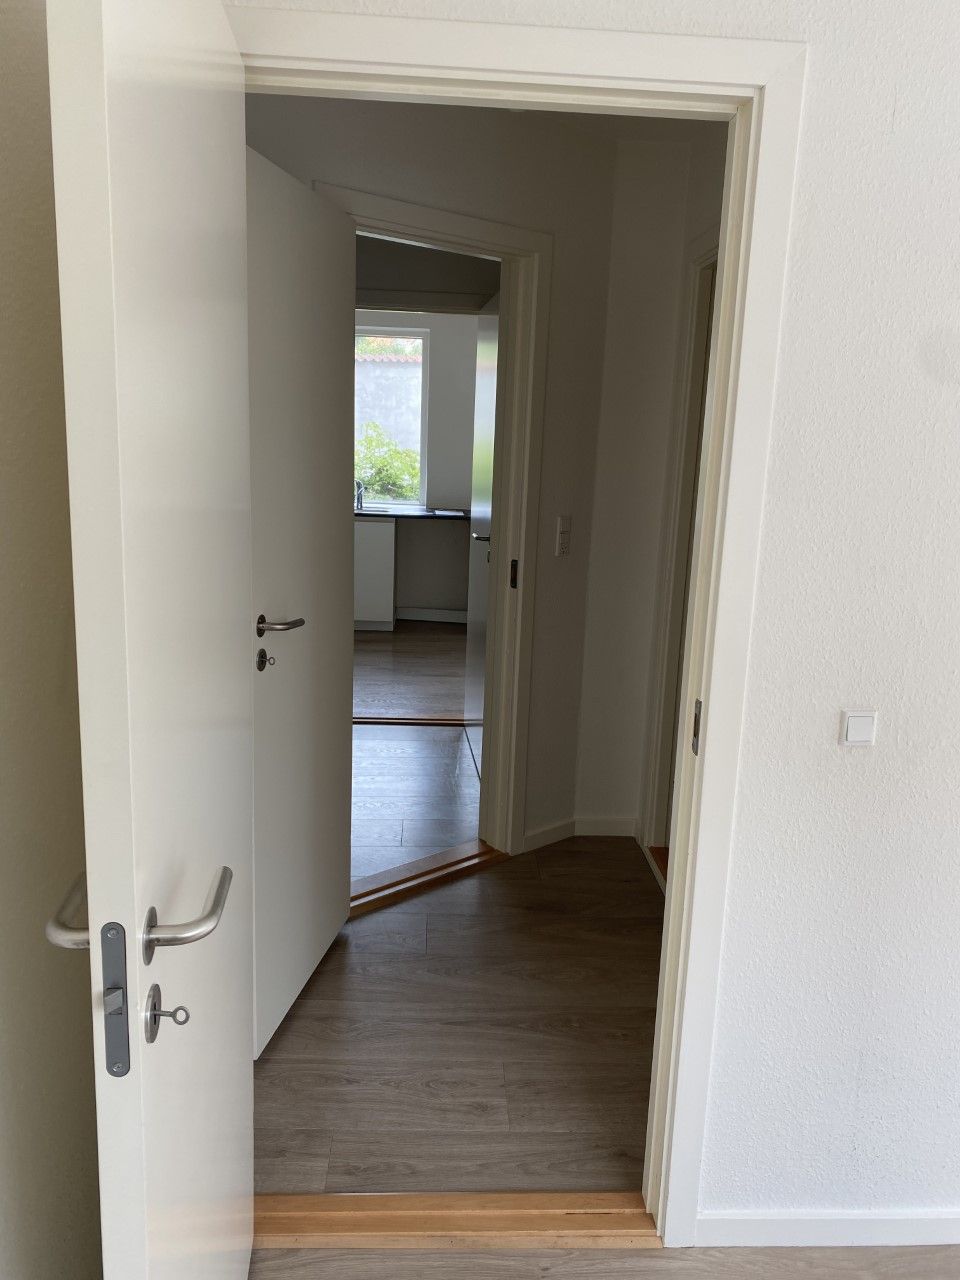 2 værelses lejlighed i Horsens 8700 på 59 kvm